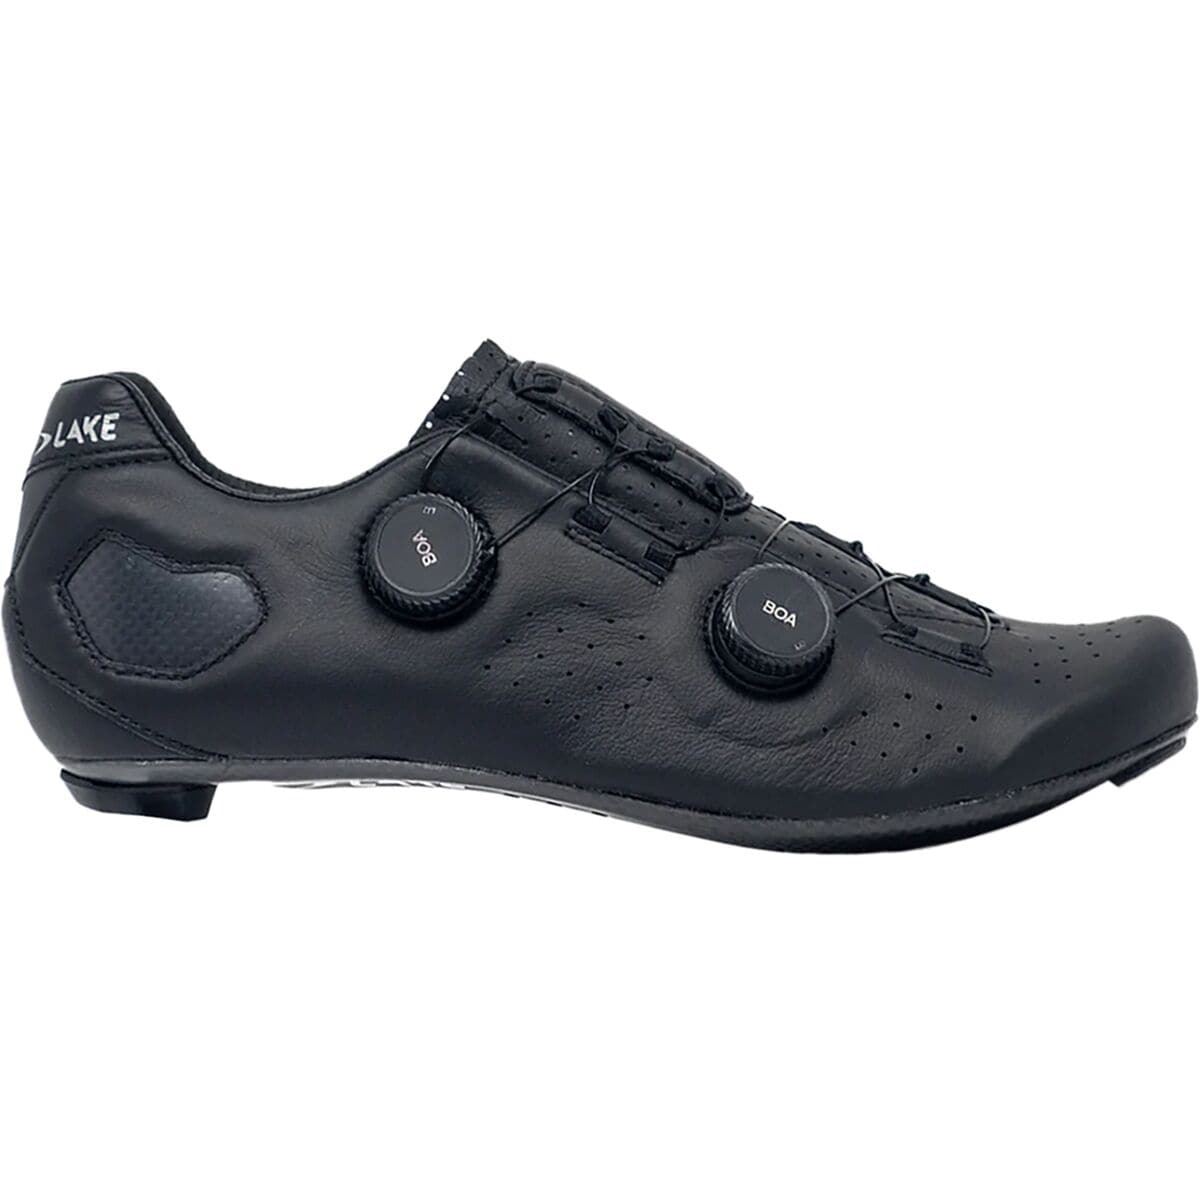 Lake CX333 Narrow Cycling Shoe - Men's Black/Silver, 47.0